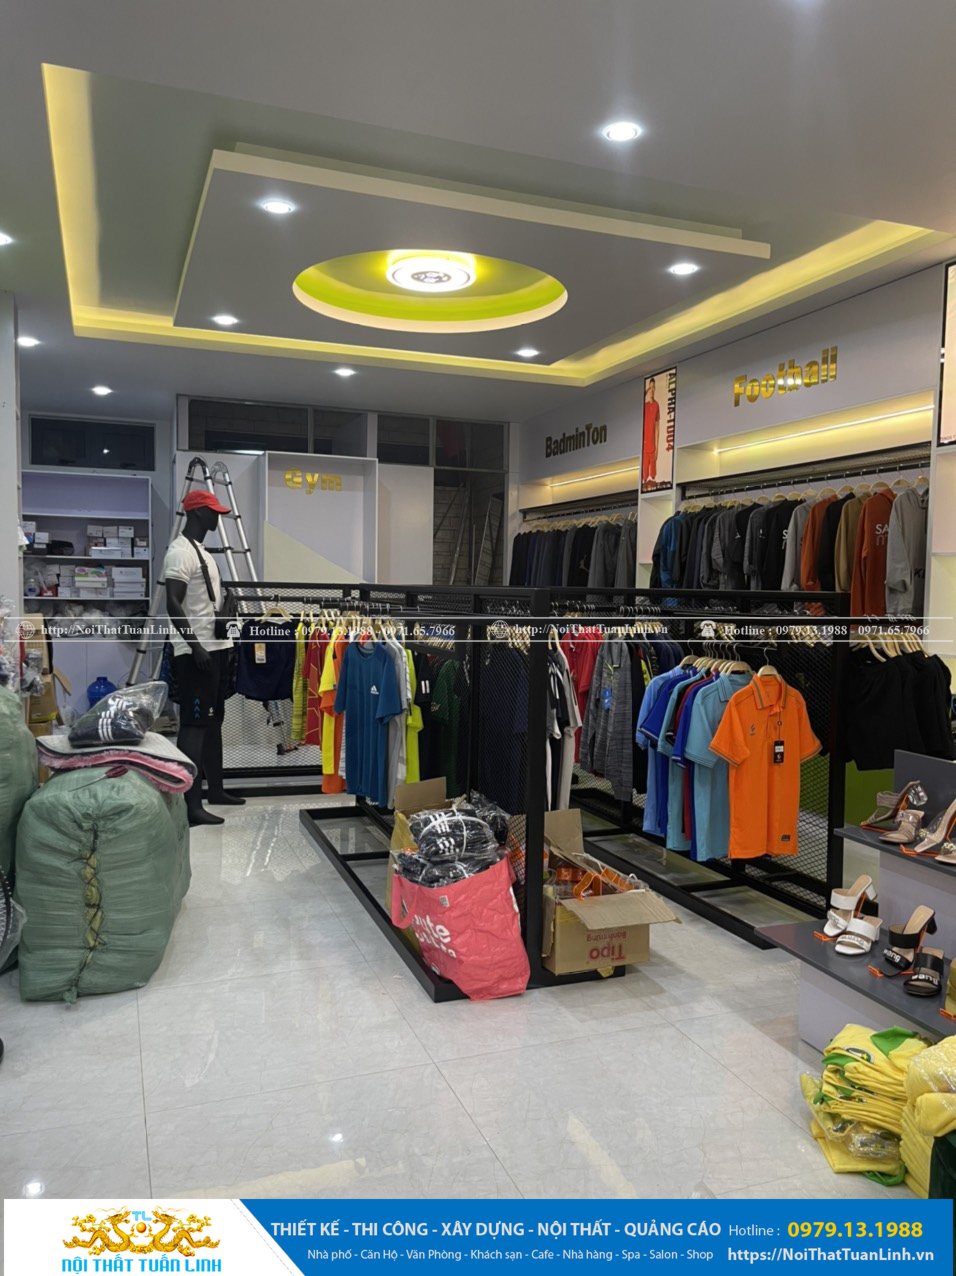 Báo giá thiết kế thi công nội thất shop thời trang Minh Khang Sport tại Phú Giáo Bình Dương 13